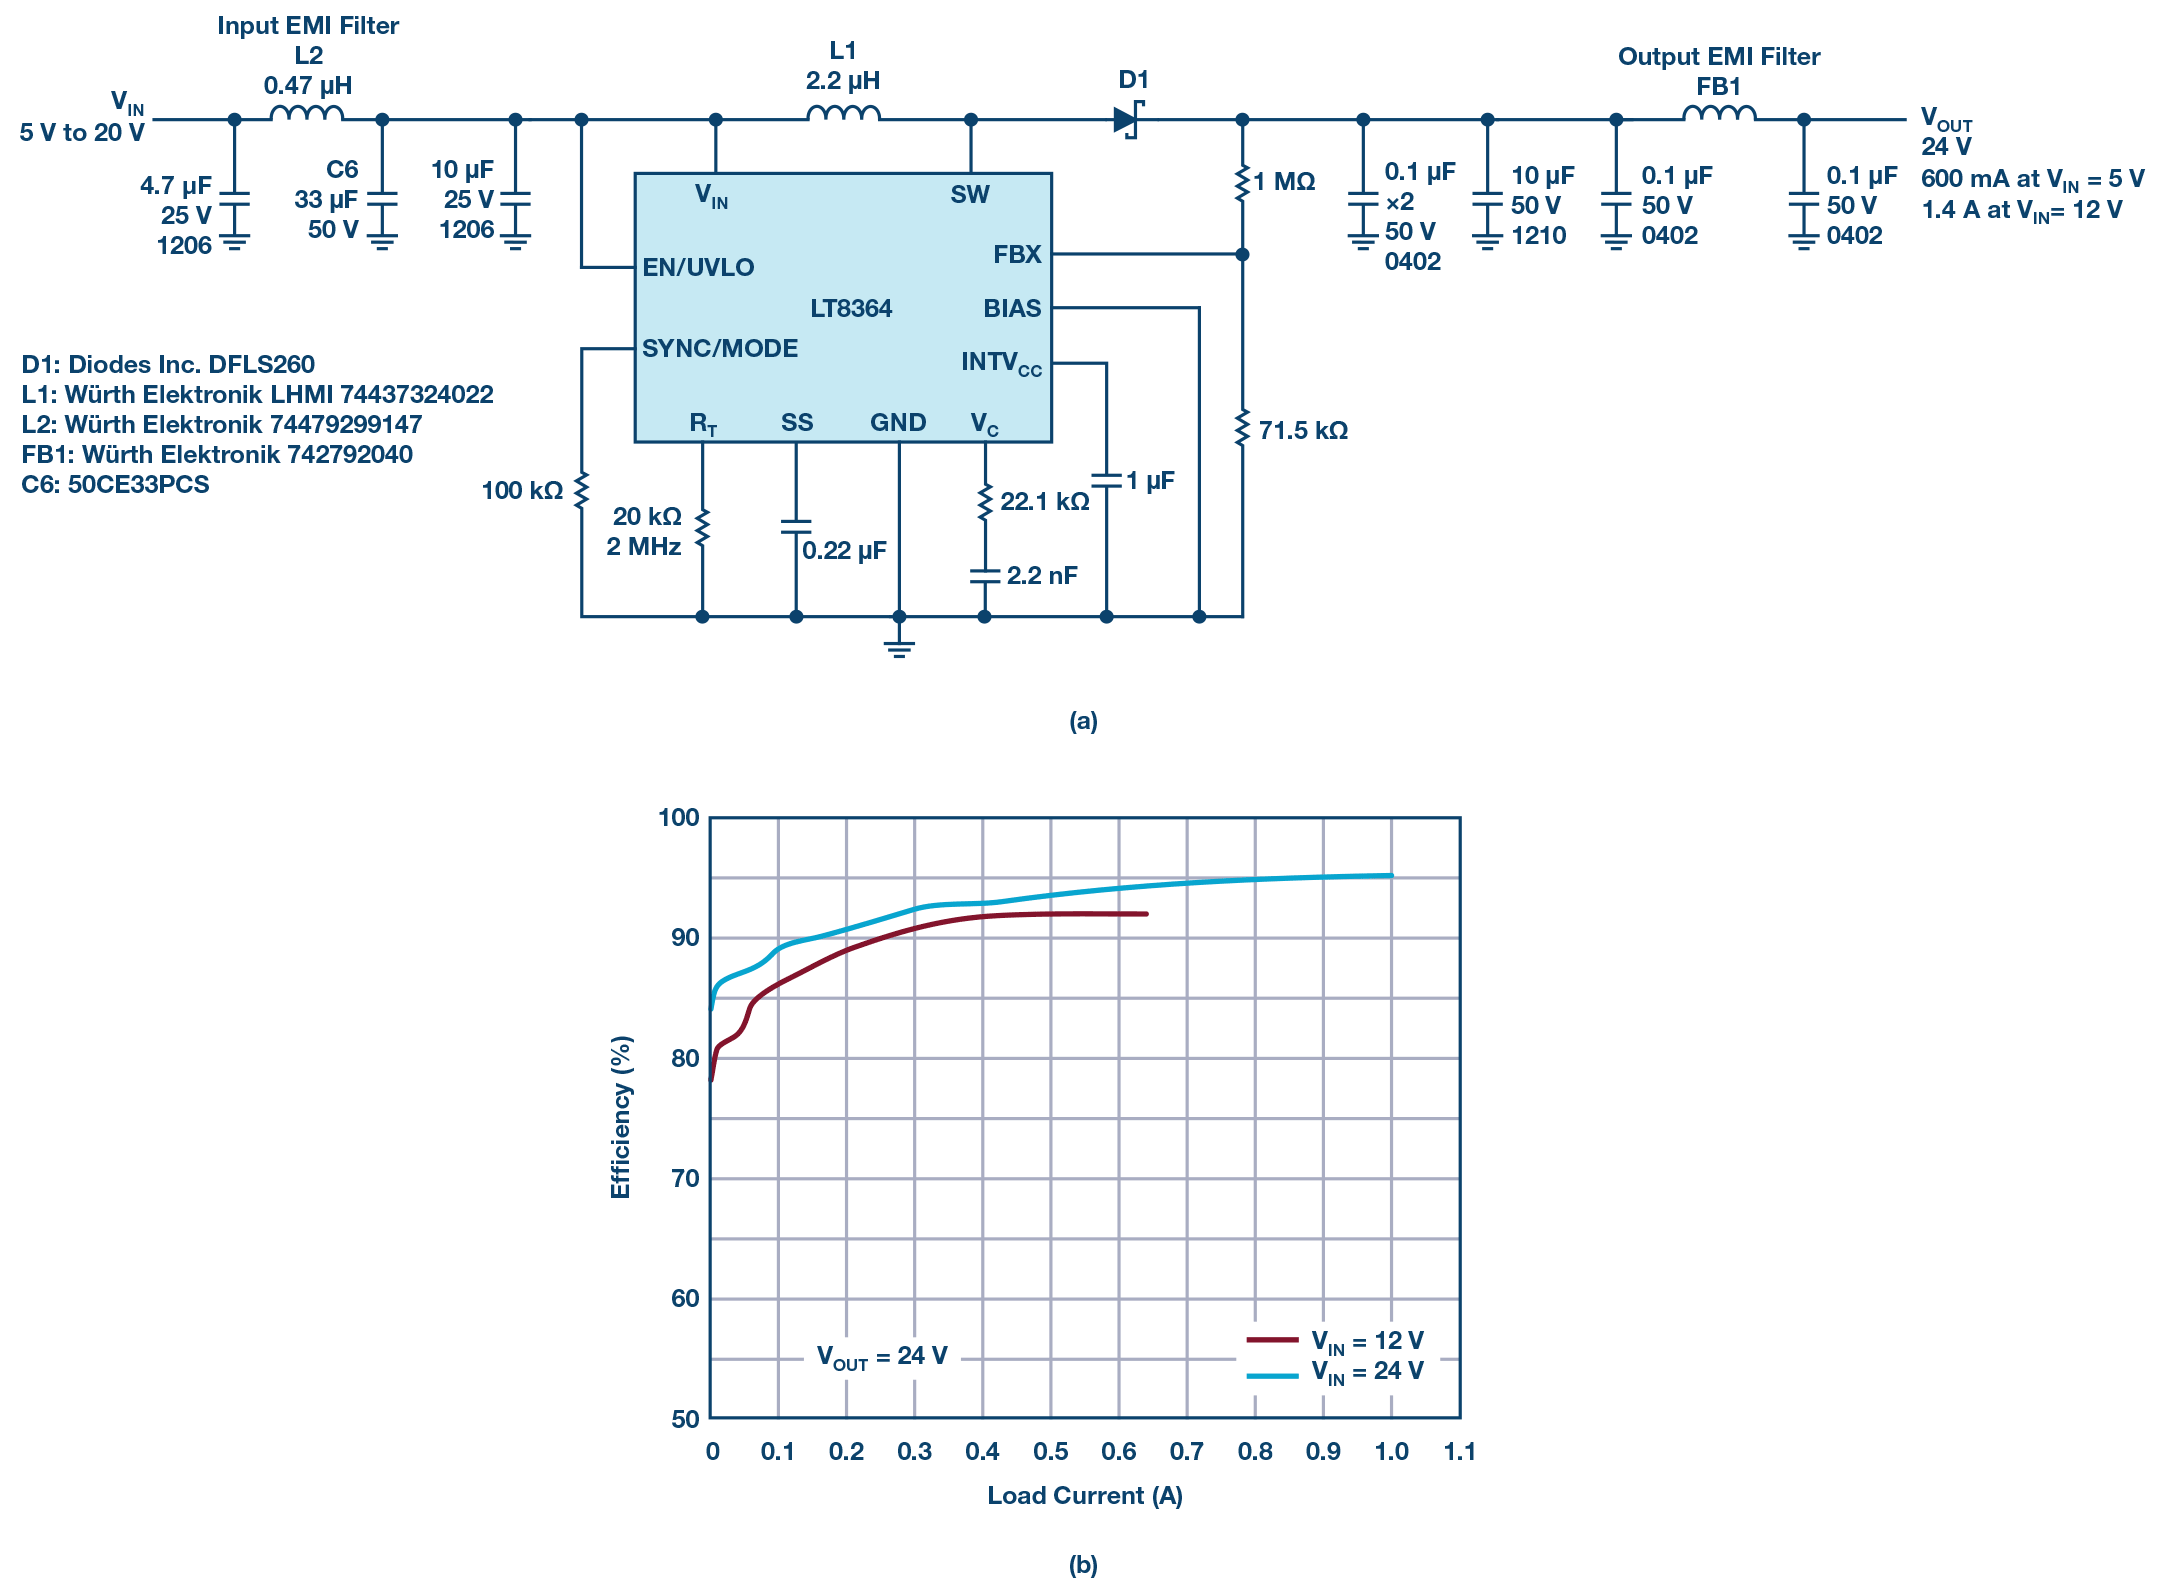 图7.LT8364、2 MHz、24 V输出升压转化器契合CISPR 25 Class 5 EMI规范（见图4）